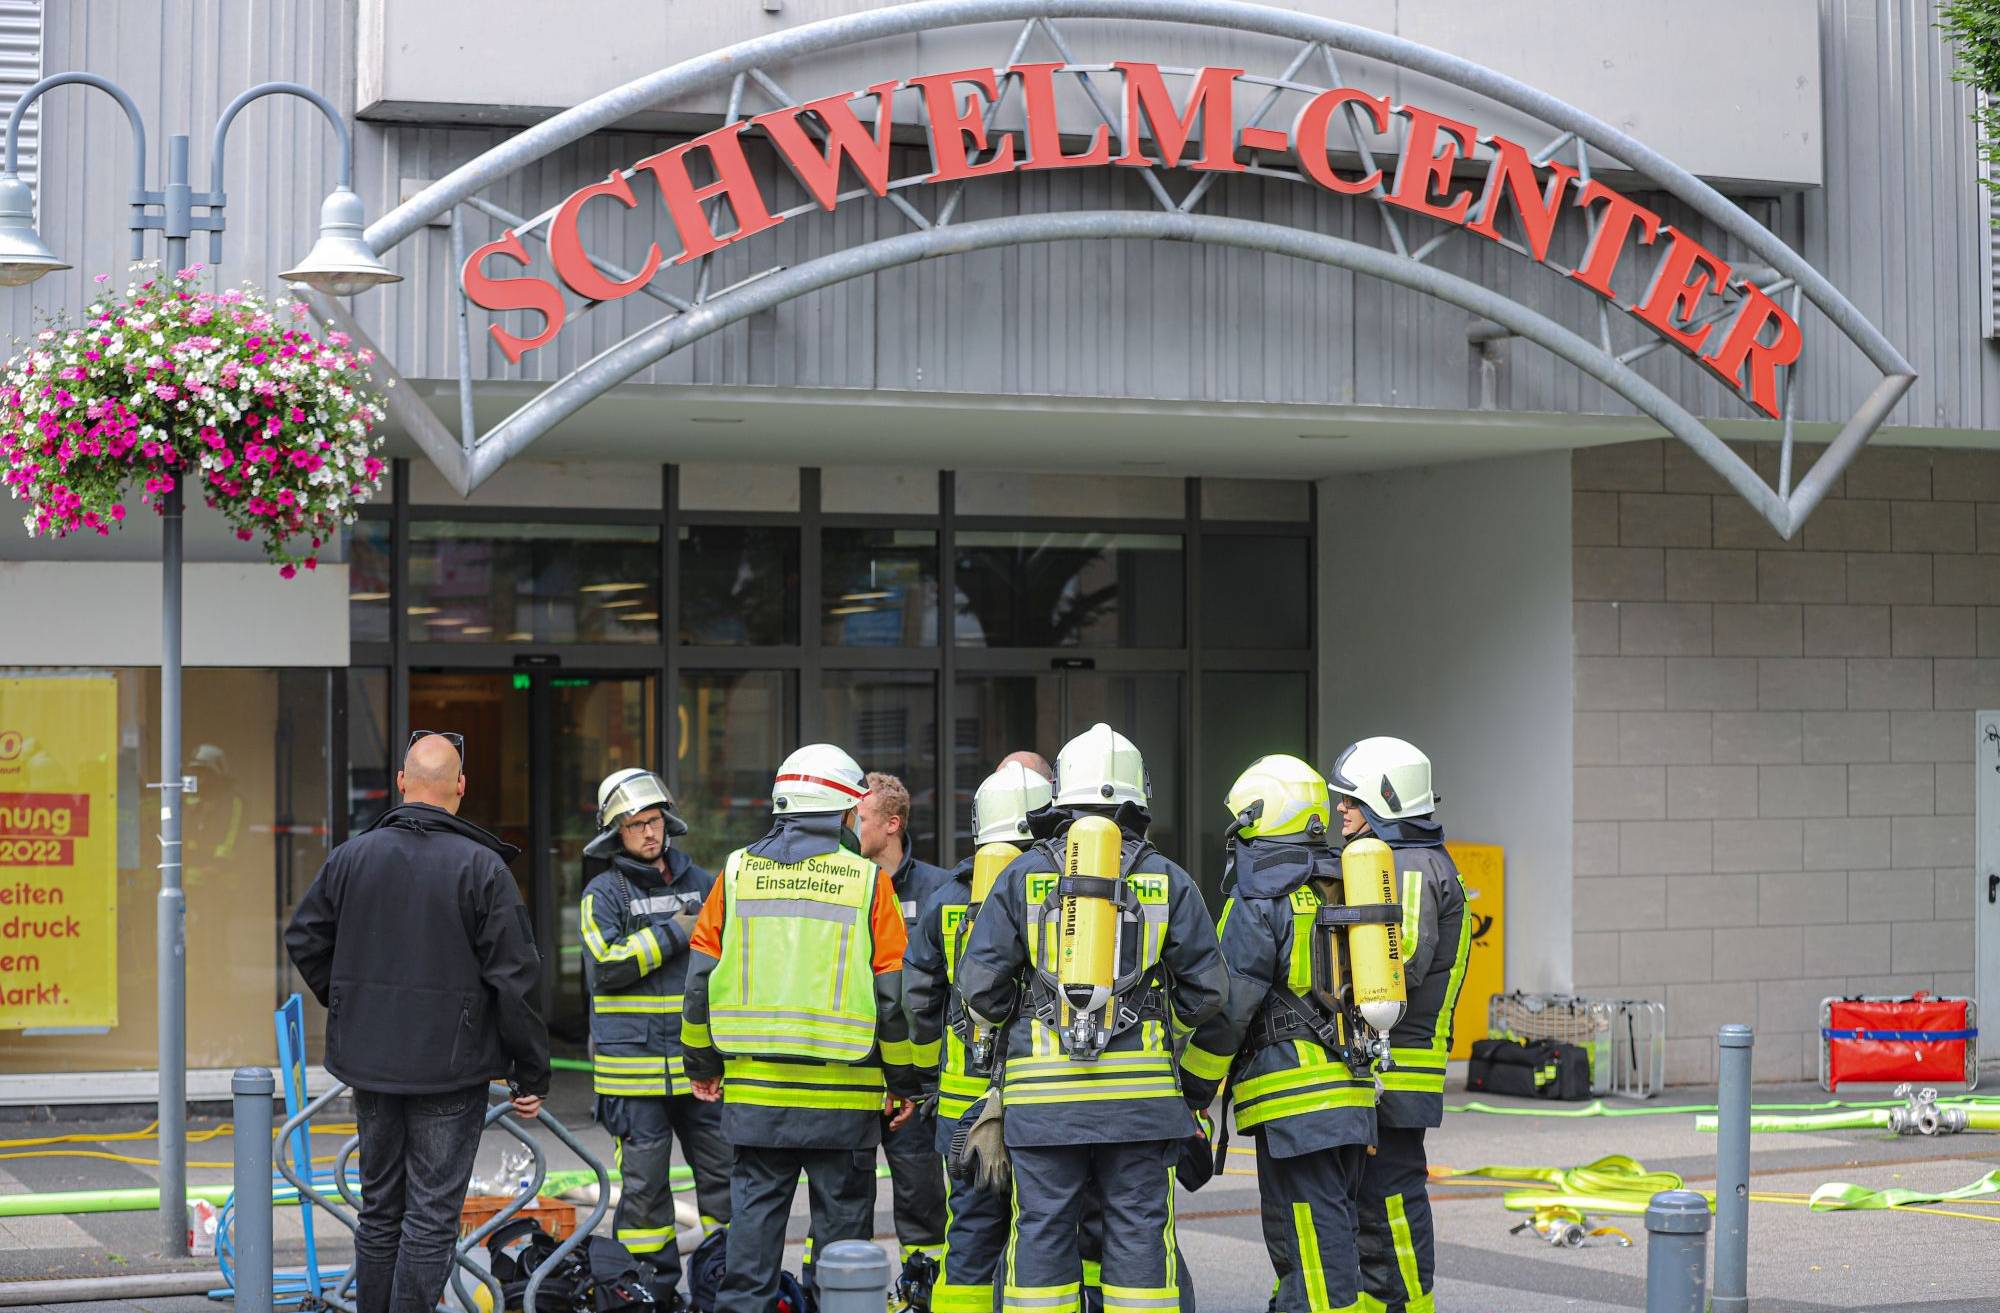 Einkaufszentrum „Schwelm-Center“ nach Feuer in Geschäft evakuiert​